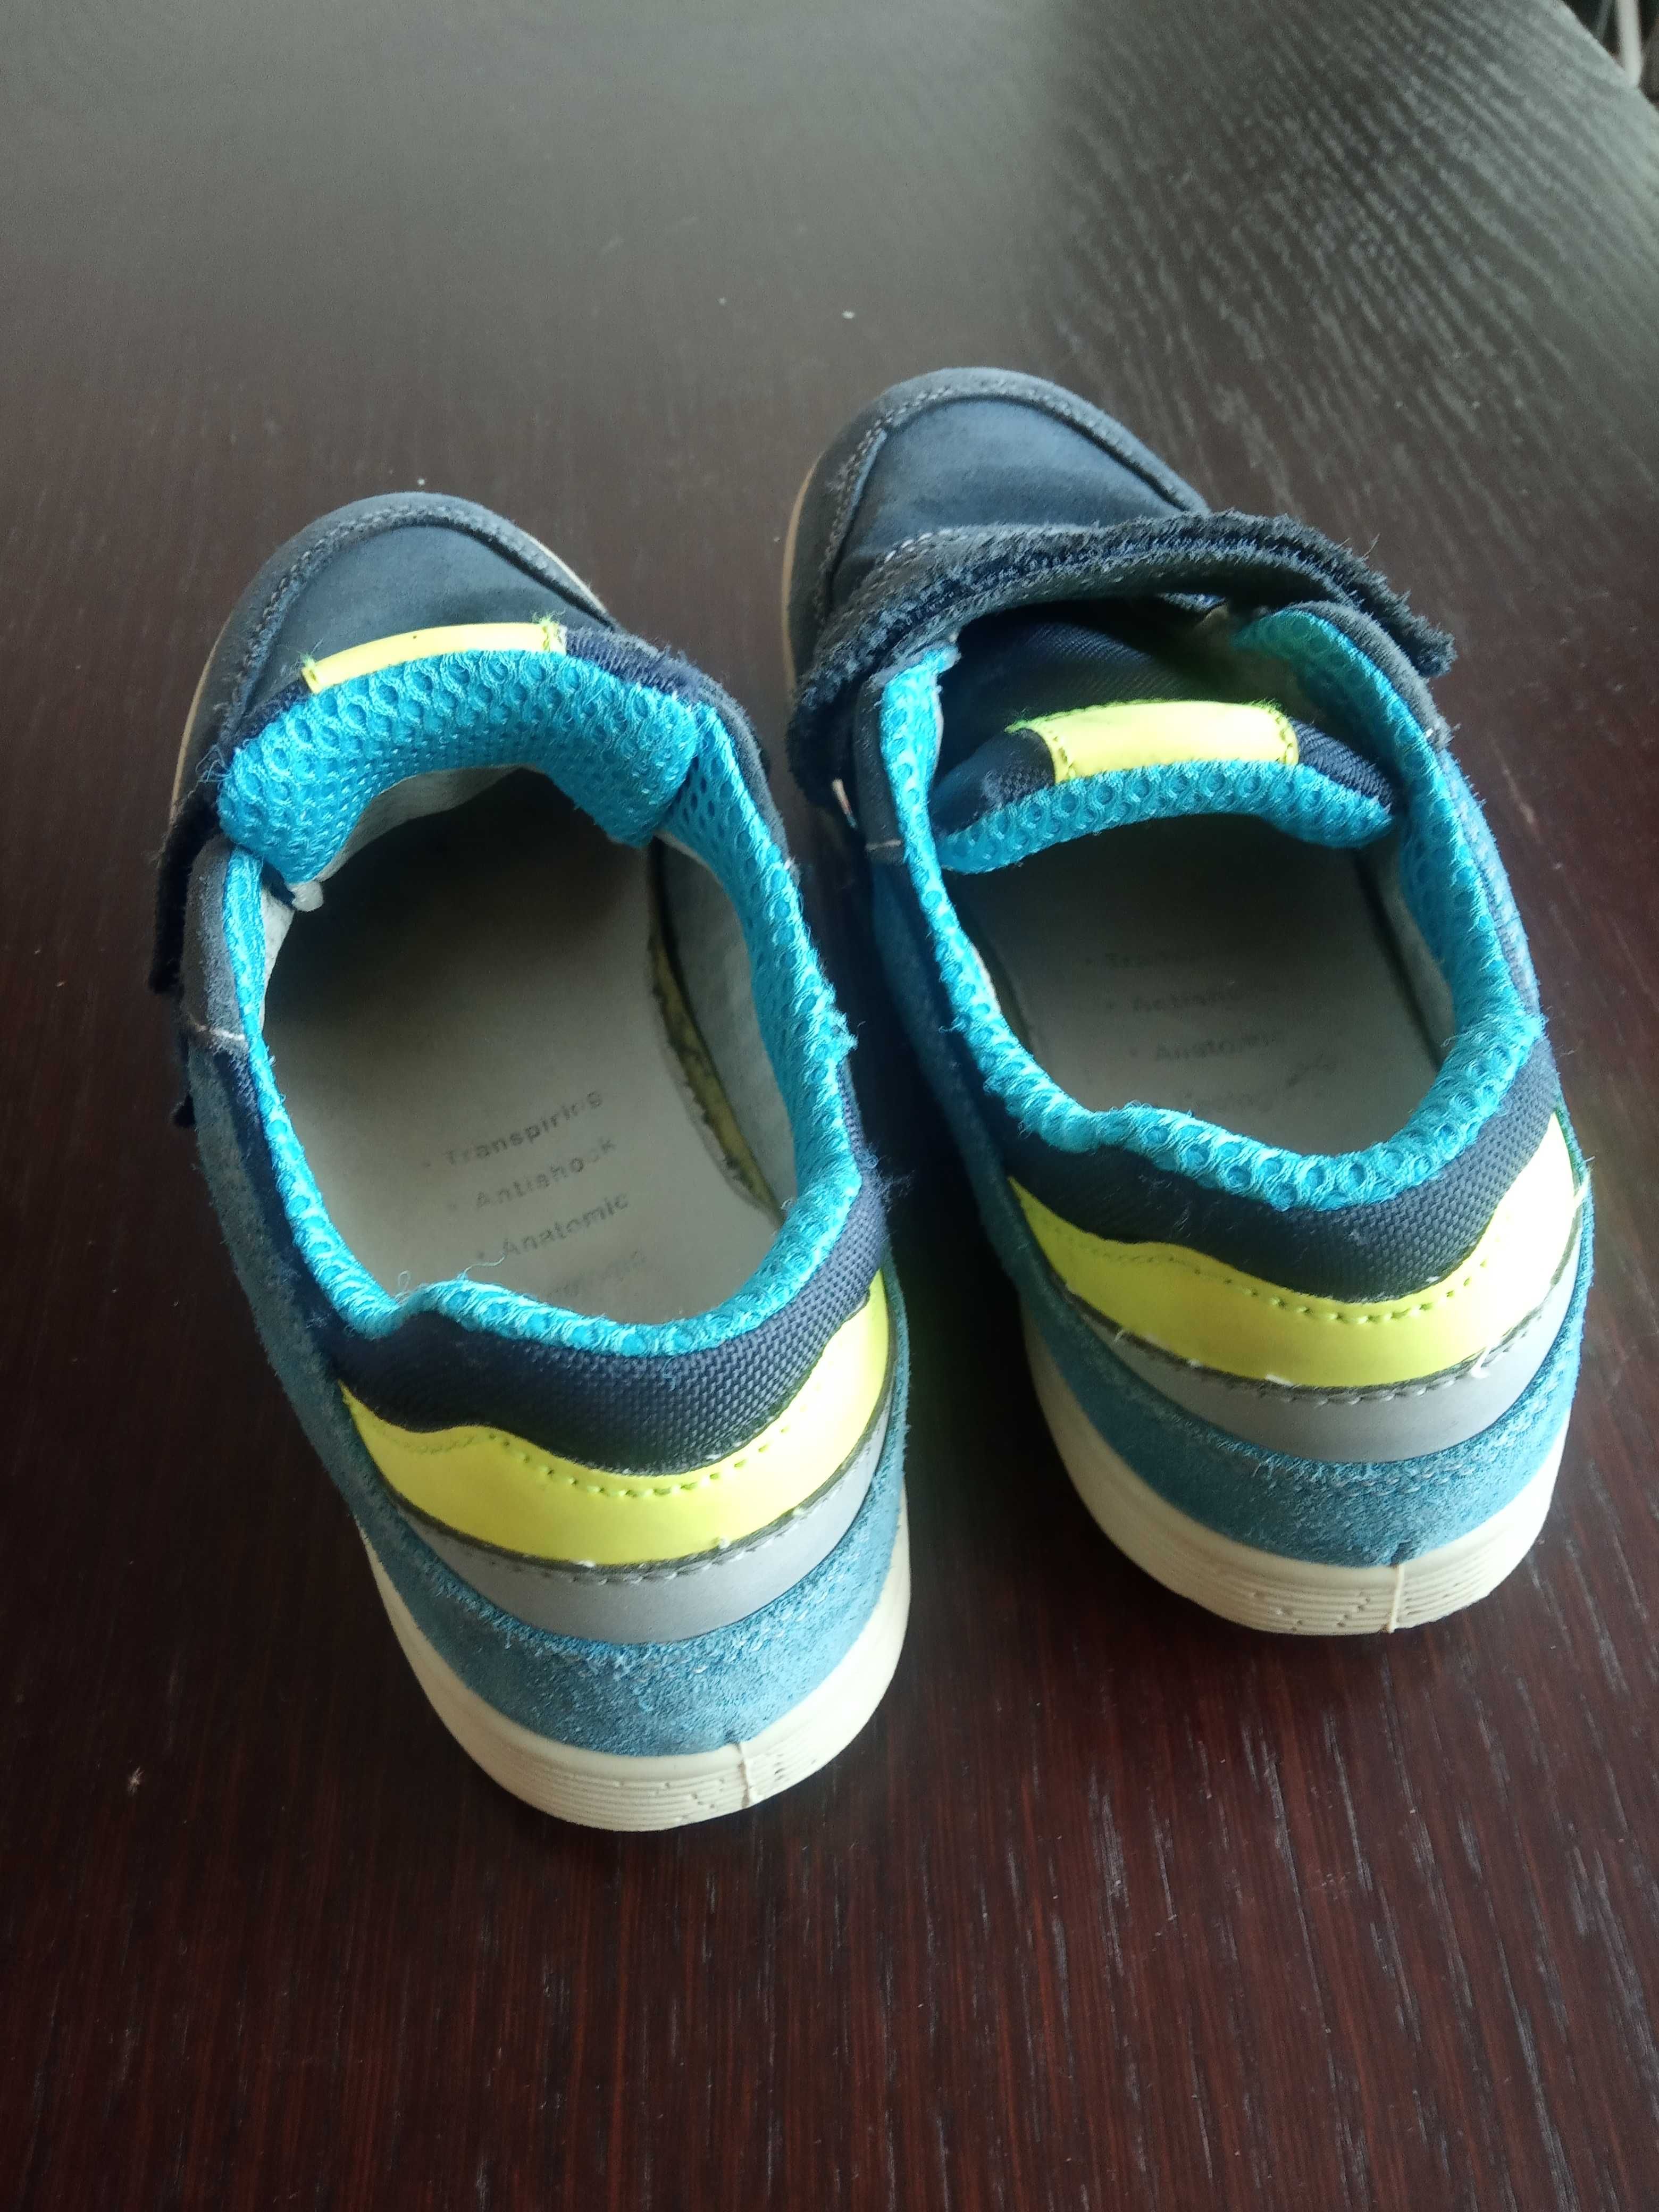 Buty dla chłopca Primigi - długość wkładki 22 cm